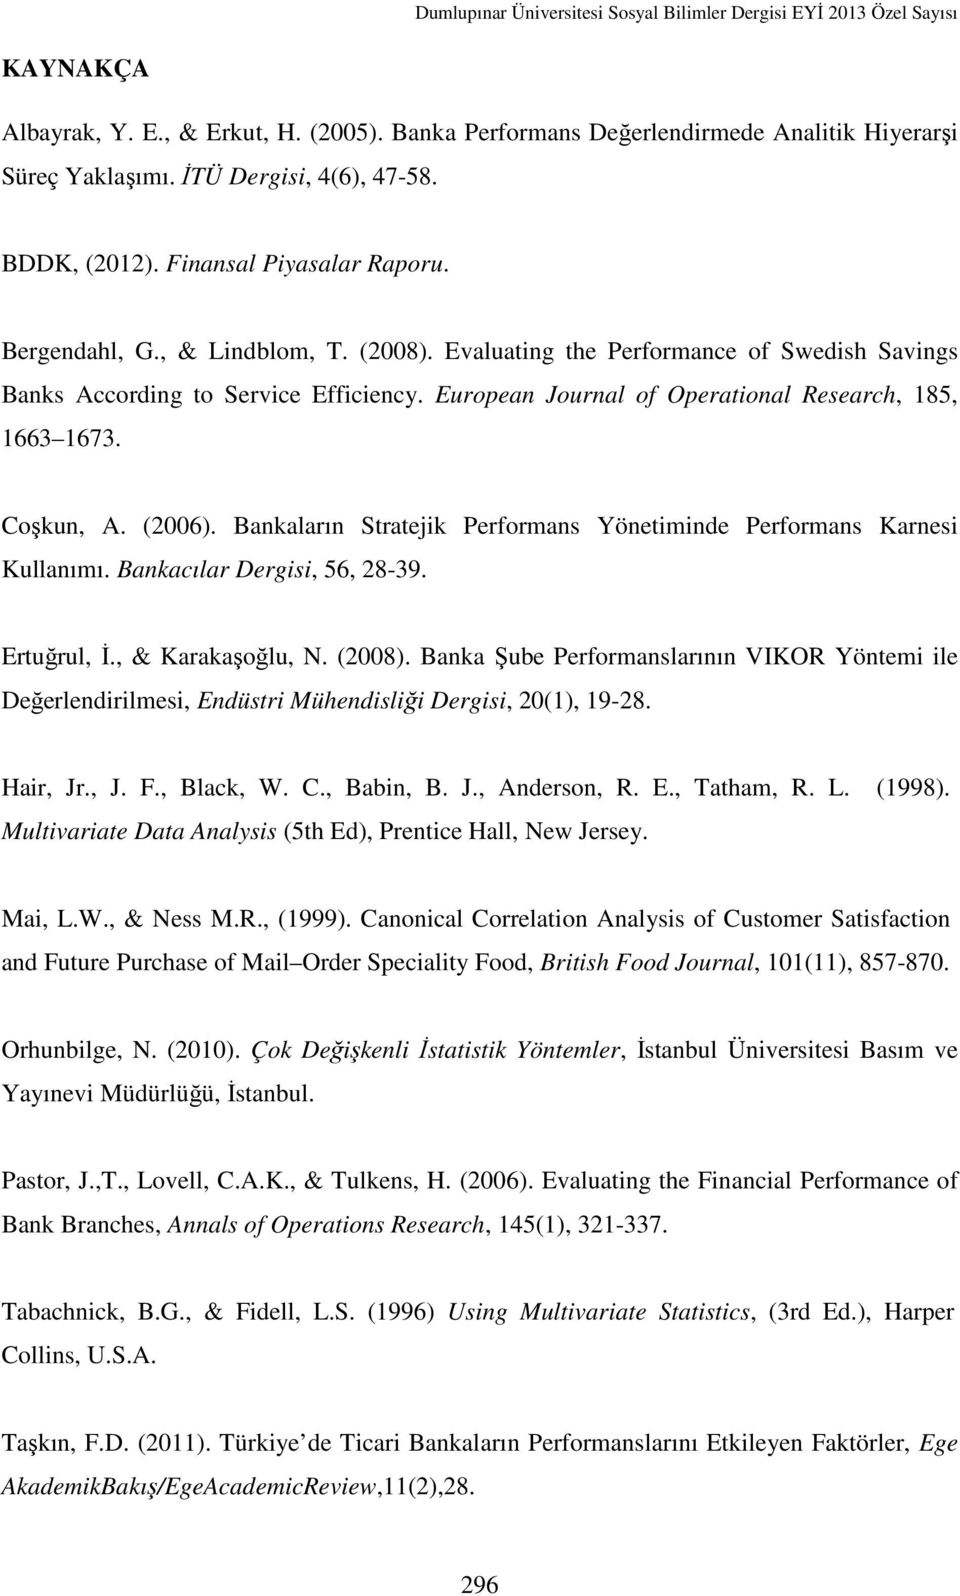 Bankaların Stratejik Performans Yönetiminde Performans Karnesi Kullanımı. Bankacılar Dergisi, 56, 28-39. Ertuğrul, İ., & Karakaşoğlu, N. (2008).